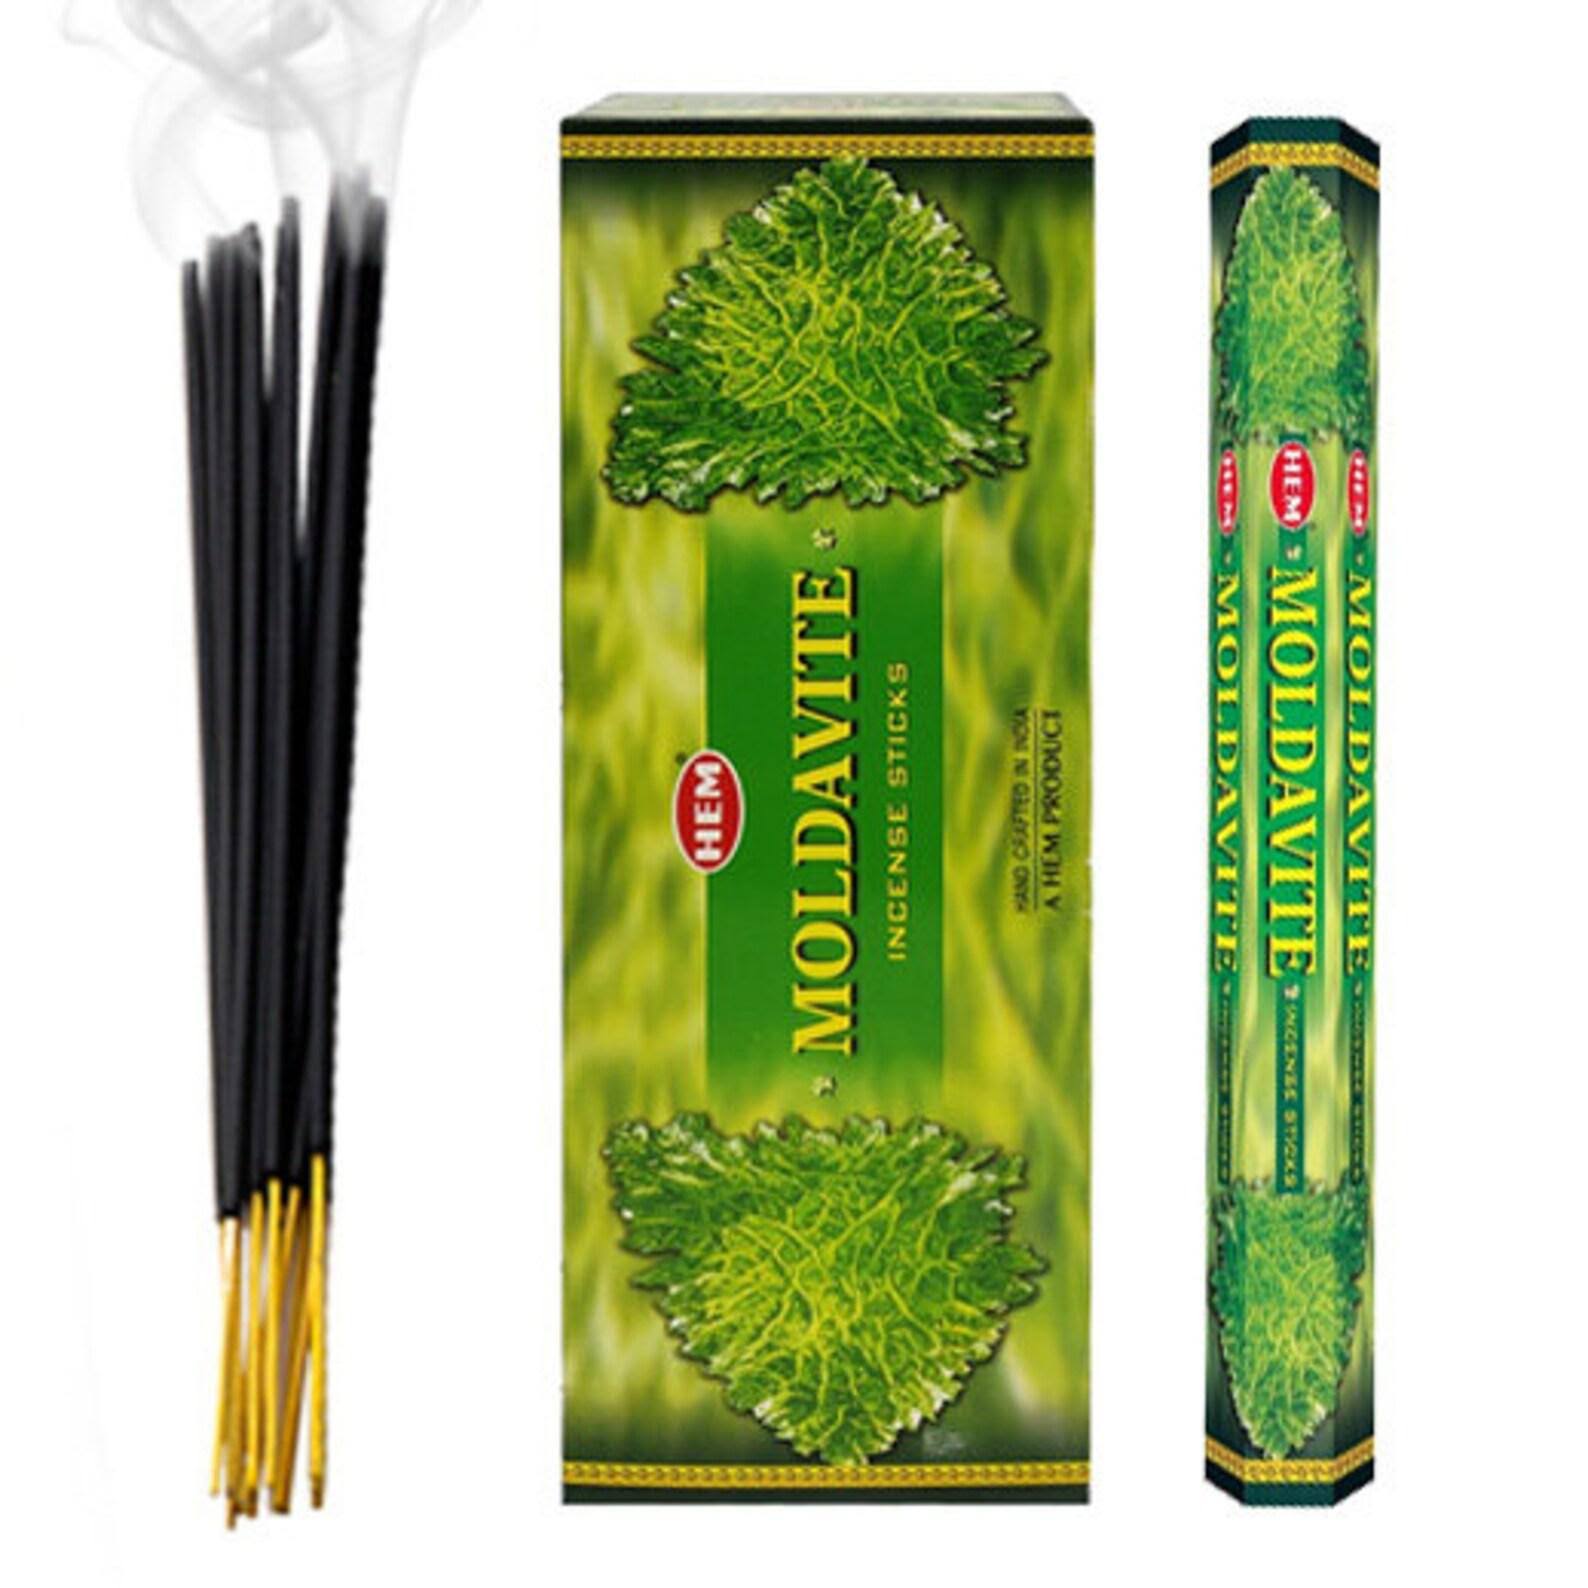 Hem Moldavite Incense Sticks